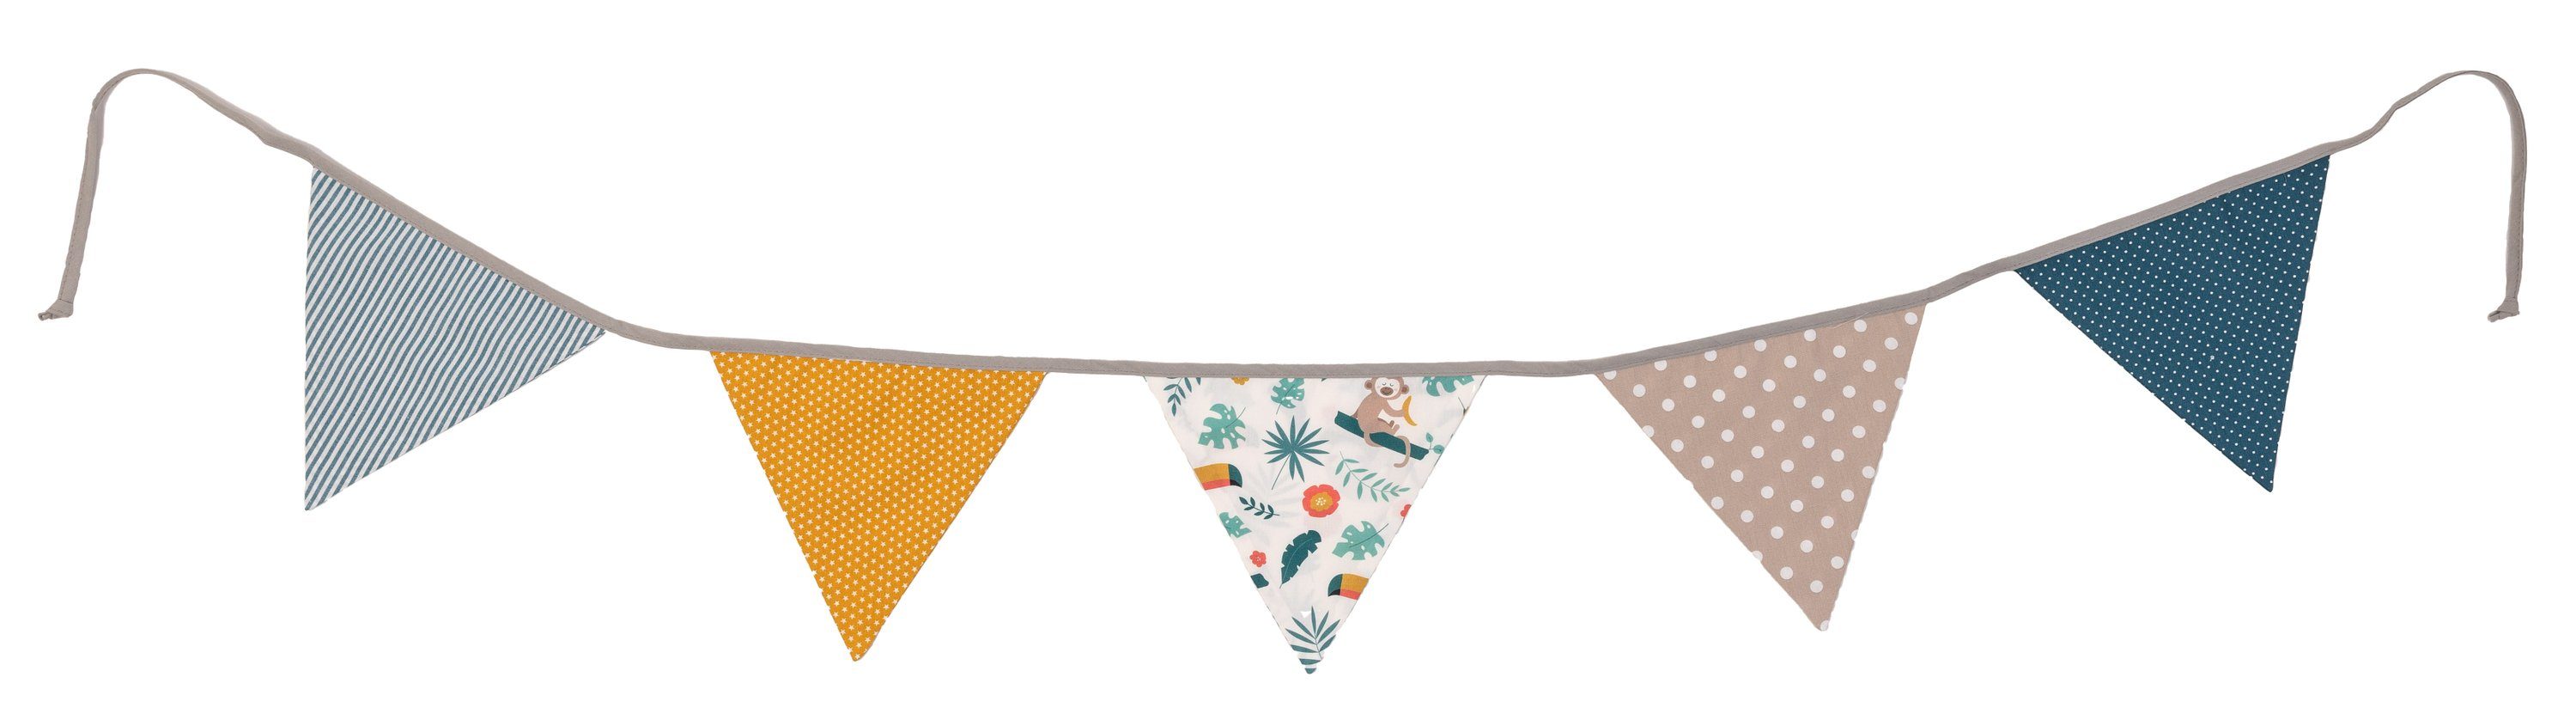 ULLENBOOM ® Wimpelkette Wimpelkette für Kinder 190 cm aus 100% Baumwolle, Deko-Girlande aus Stoff für das Kinderzimmer (Made in EU)